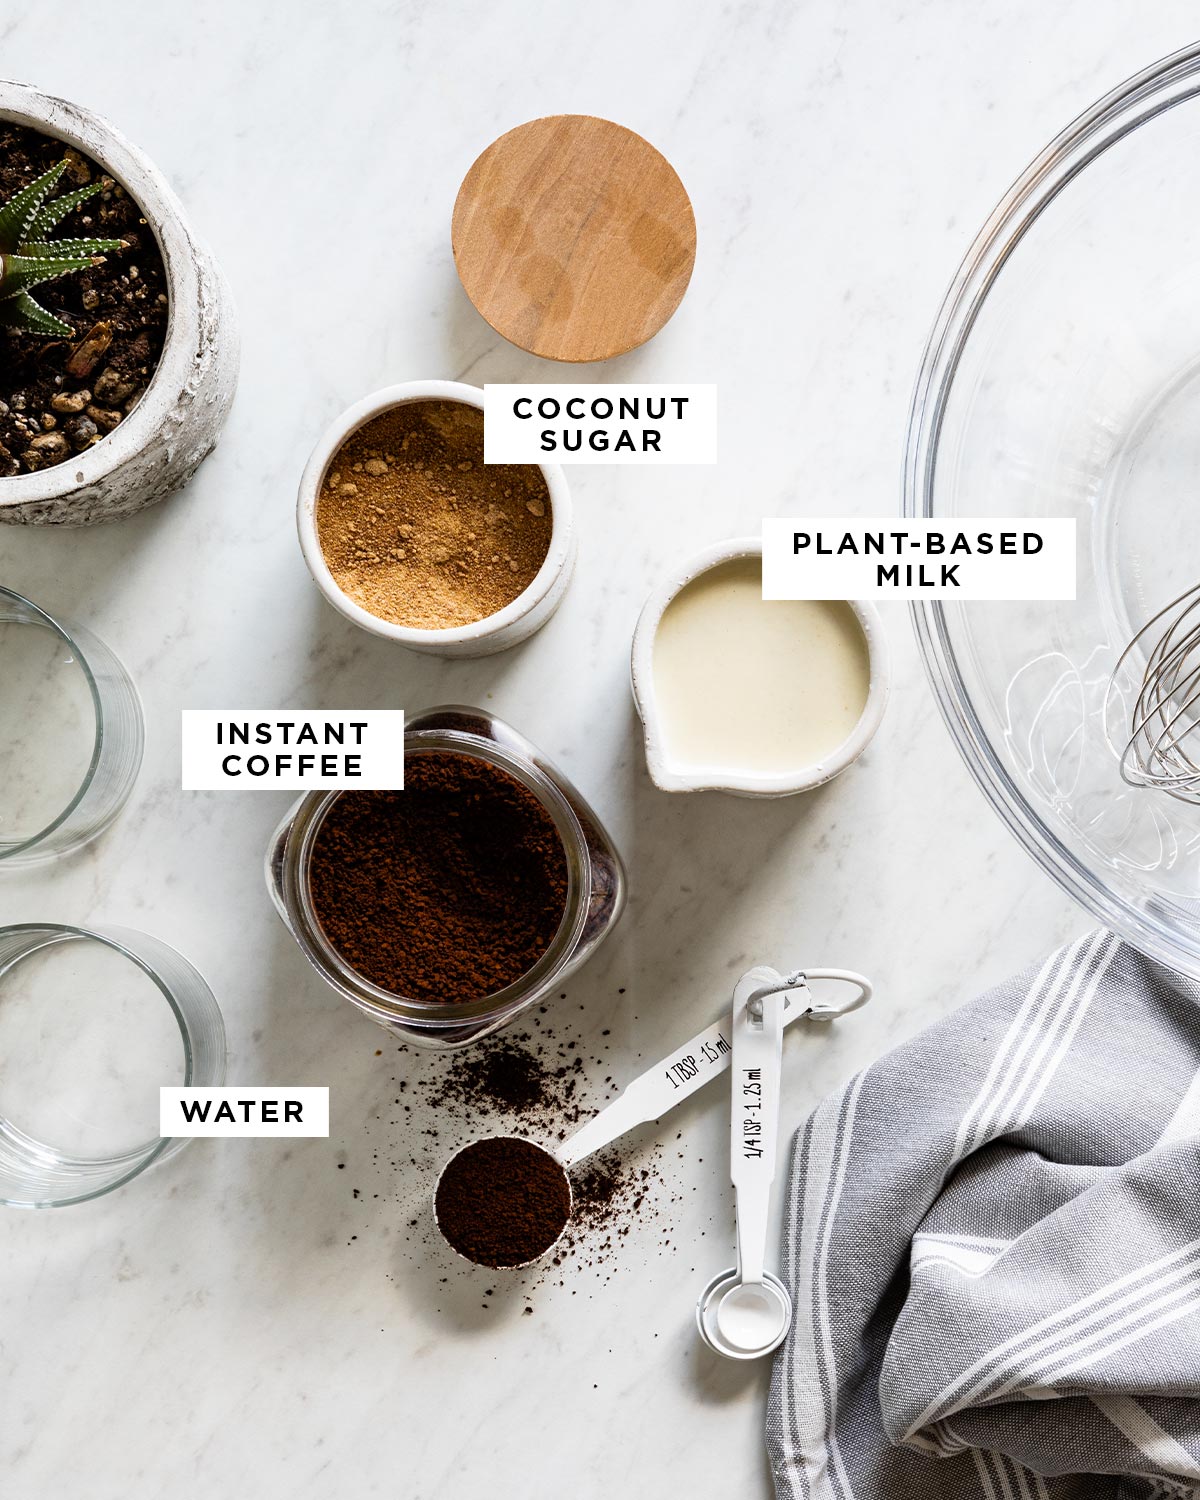 Ingredienti etichettati per la ricetta del caffè dalgona, tra cui zucchero di cocco, latte vegetale, caffè istantaneo e acqua.